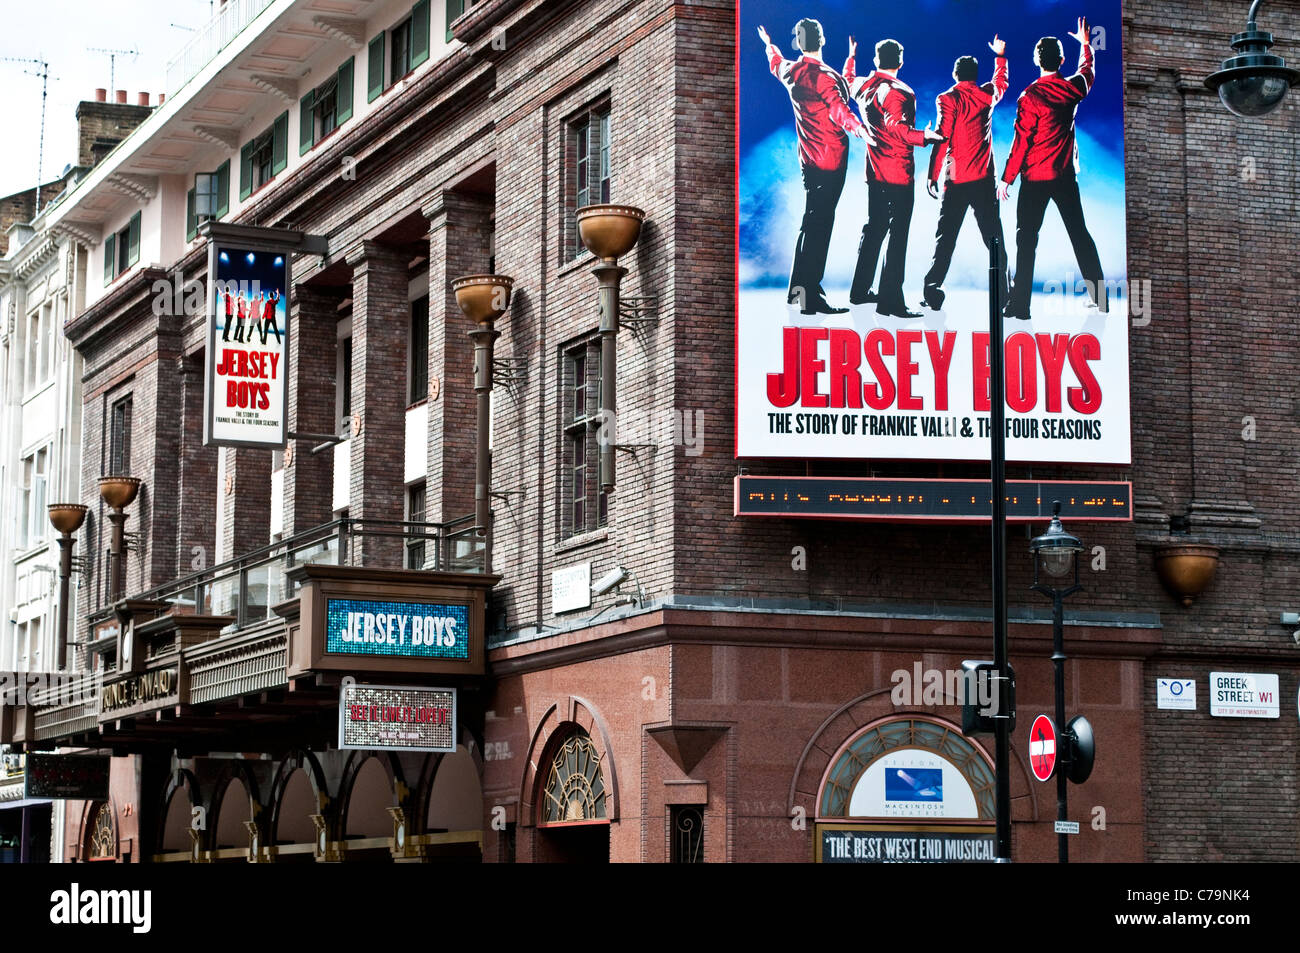 Prince Edward Theatre sur Old Compton Street montrant Jersey Boys comédie musicale, Londres, Royaume-Uni Banque D'Images